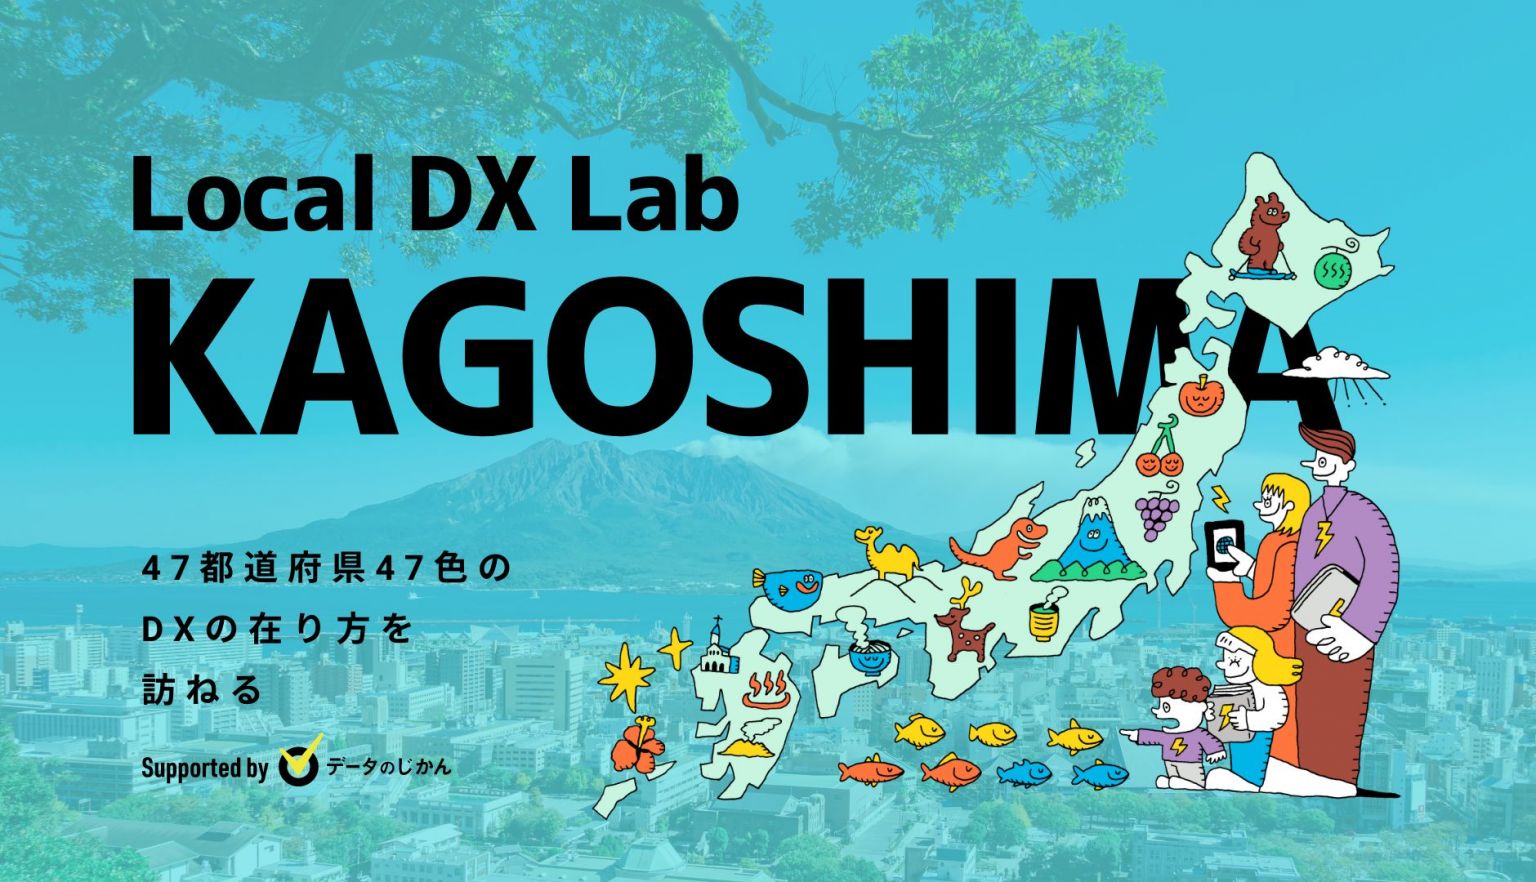 鹿児島県の地域DX・デジタル化支援一覧47都道府県47色のDXの在り方を訪ねるLocalDXLab